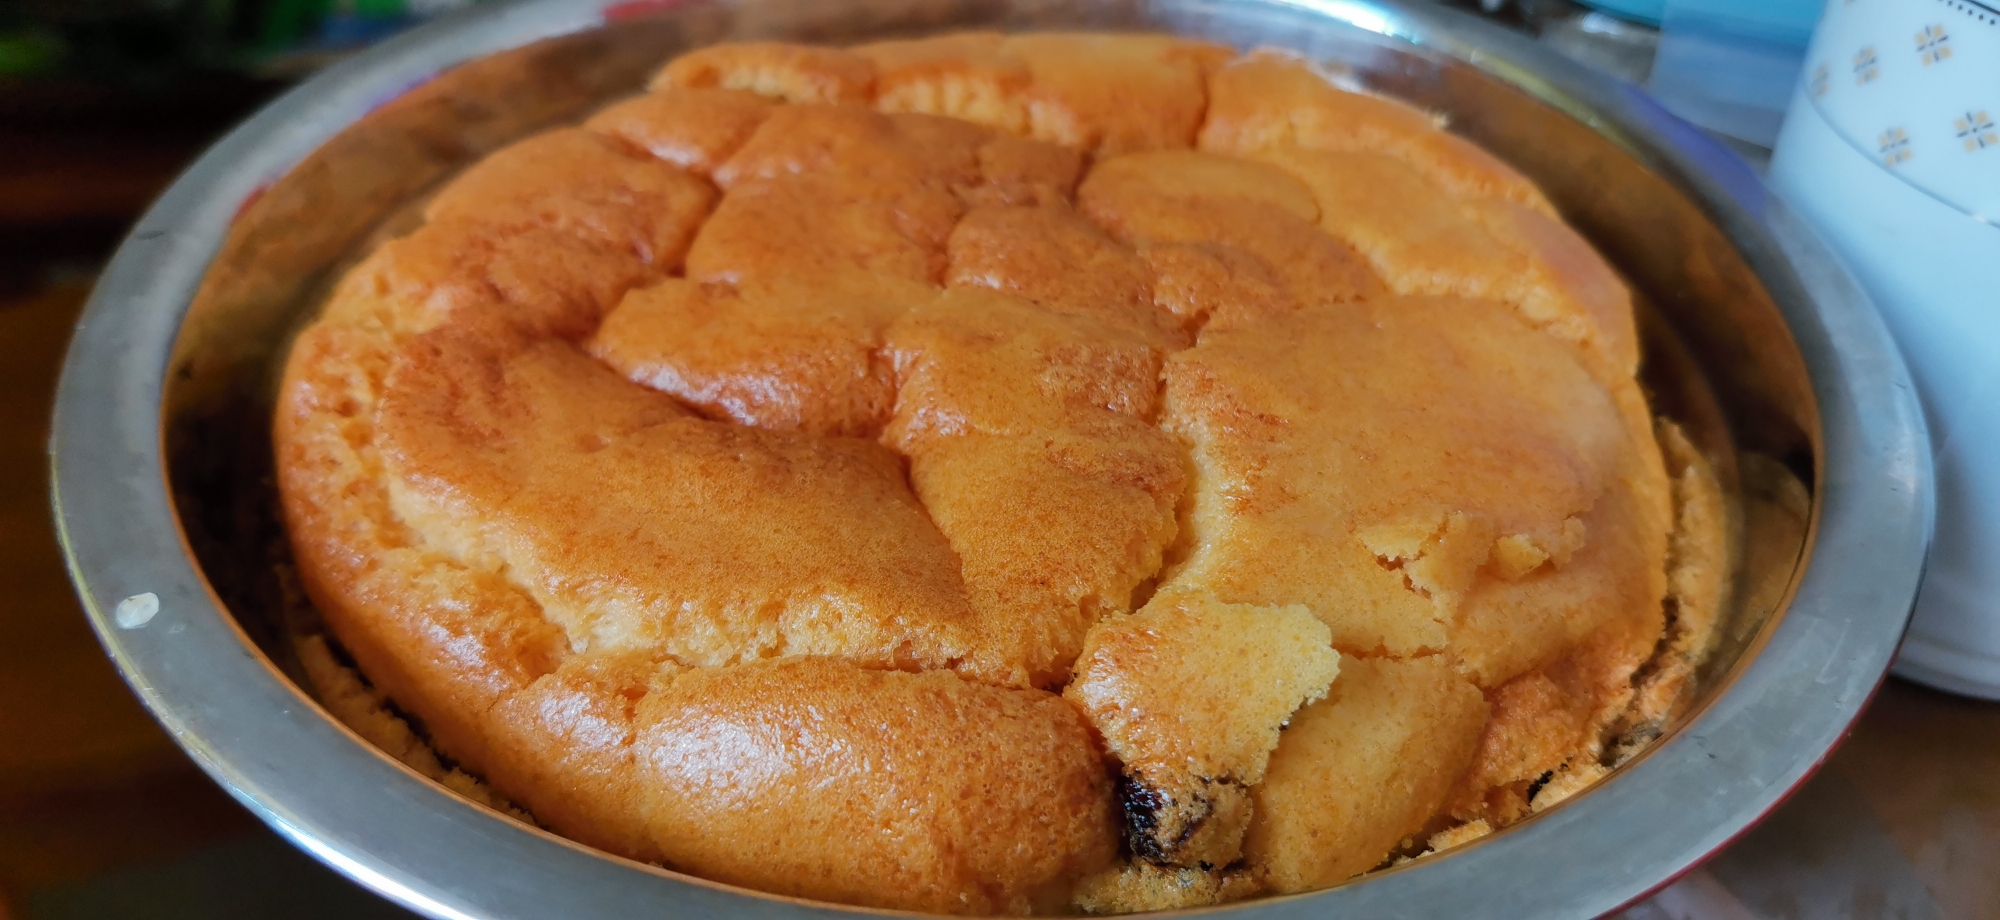 超级健康的红薯抹面蛋糕